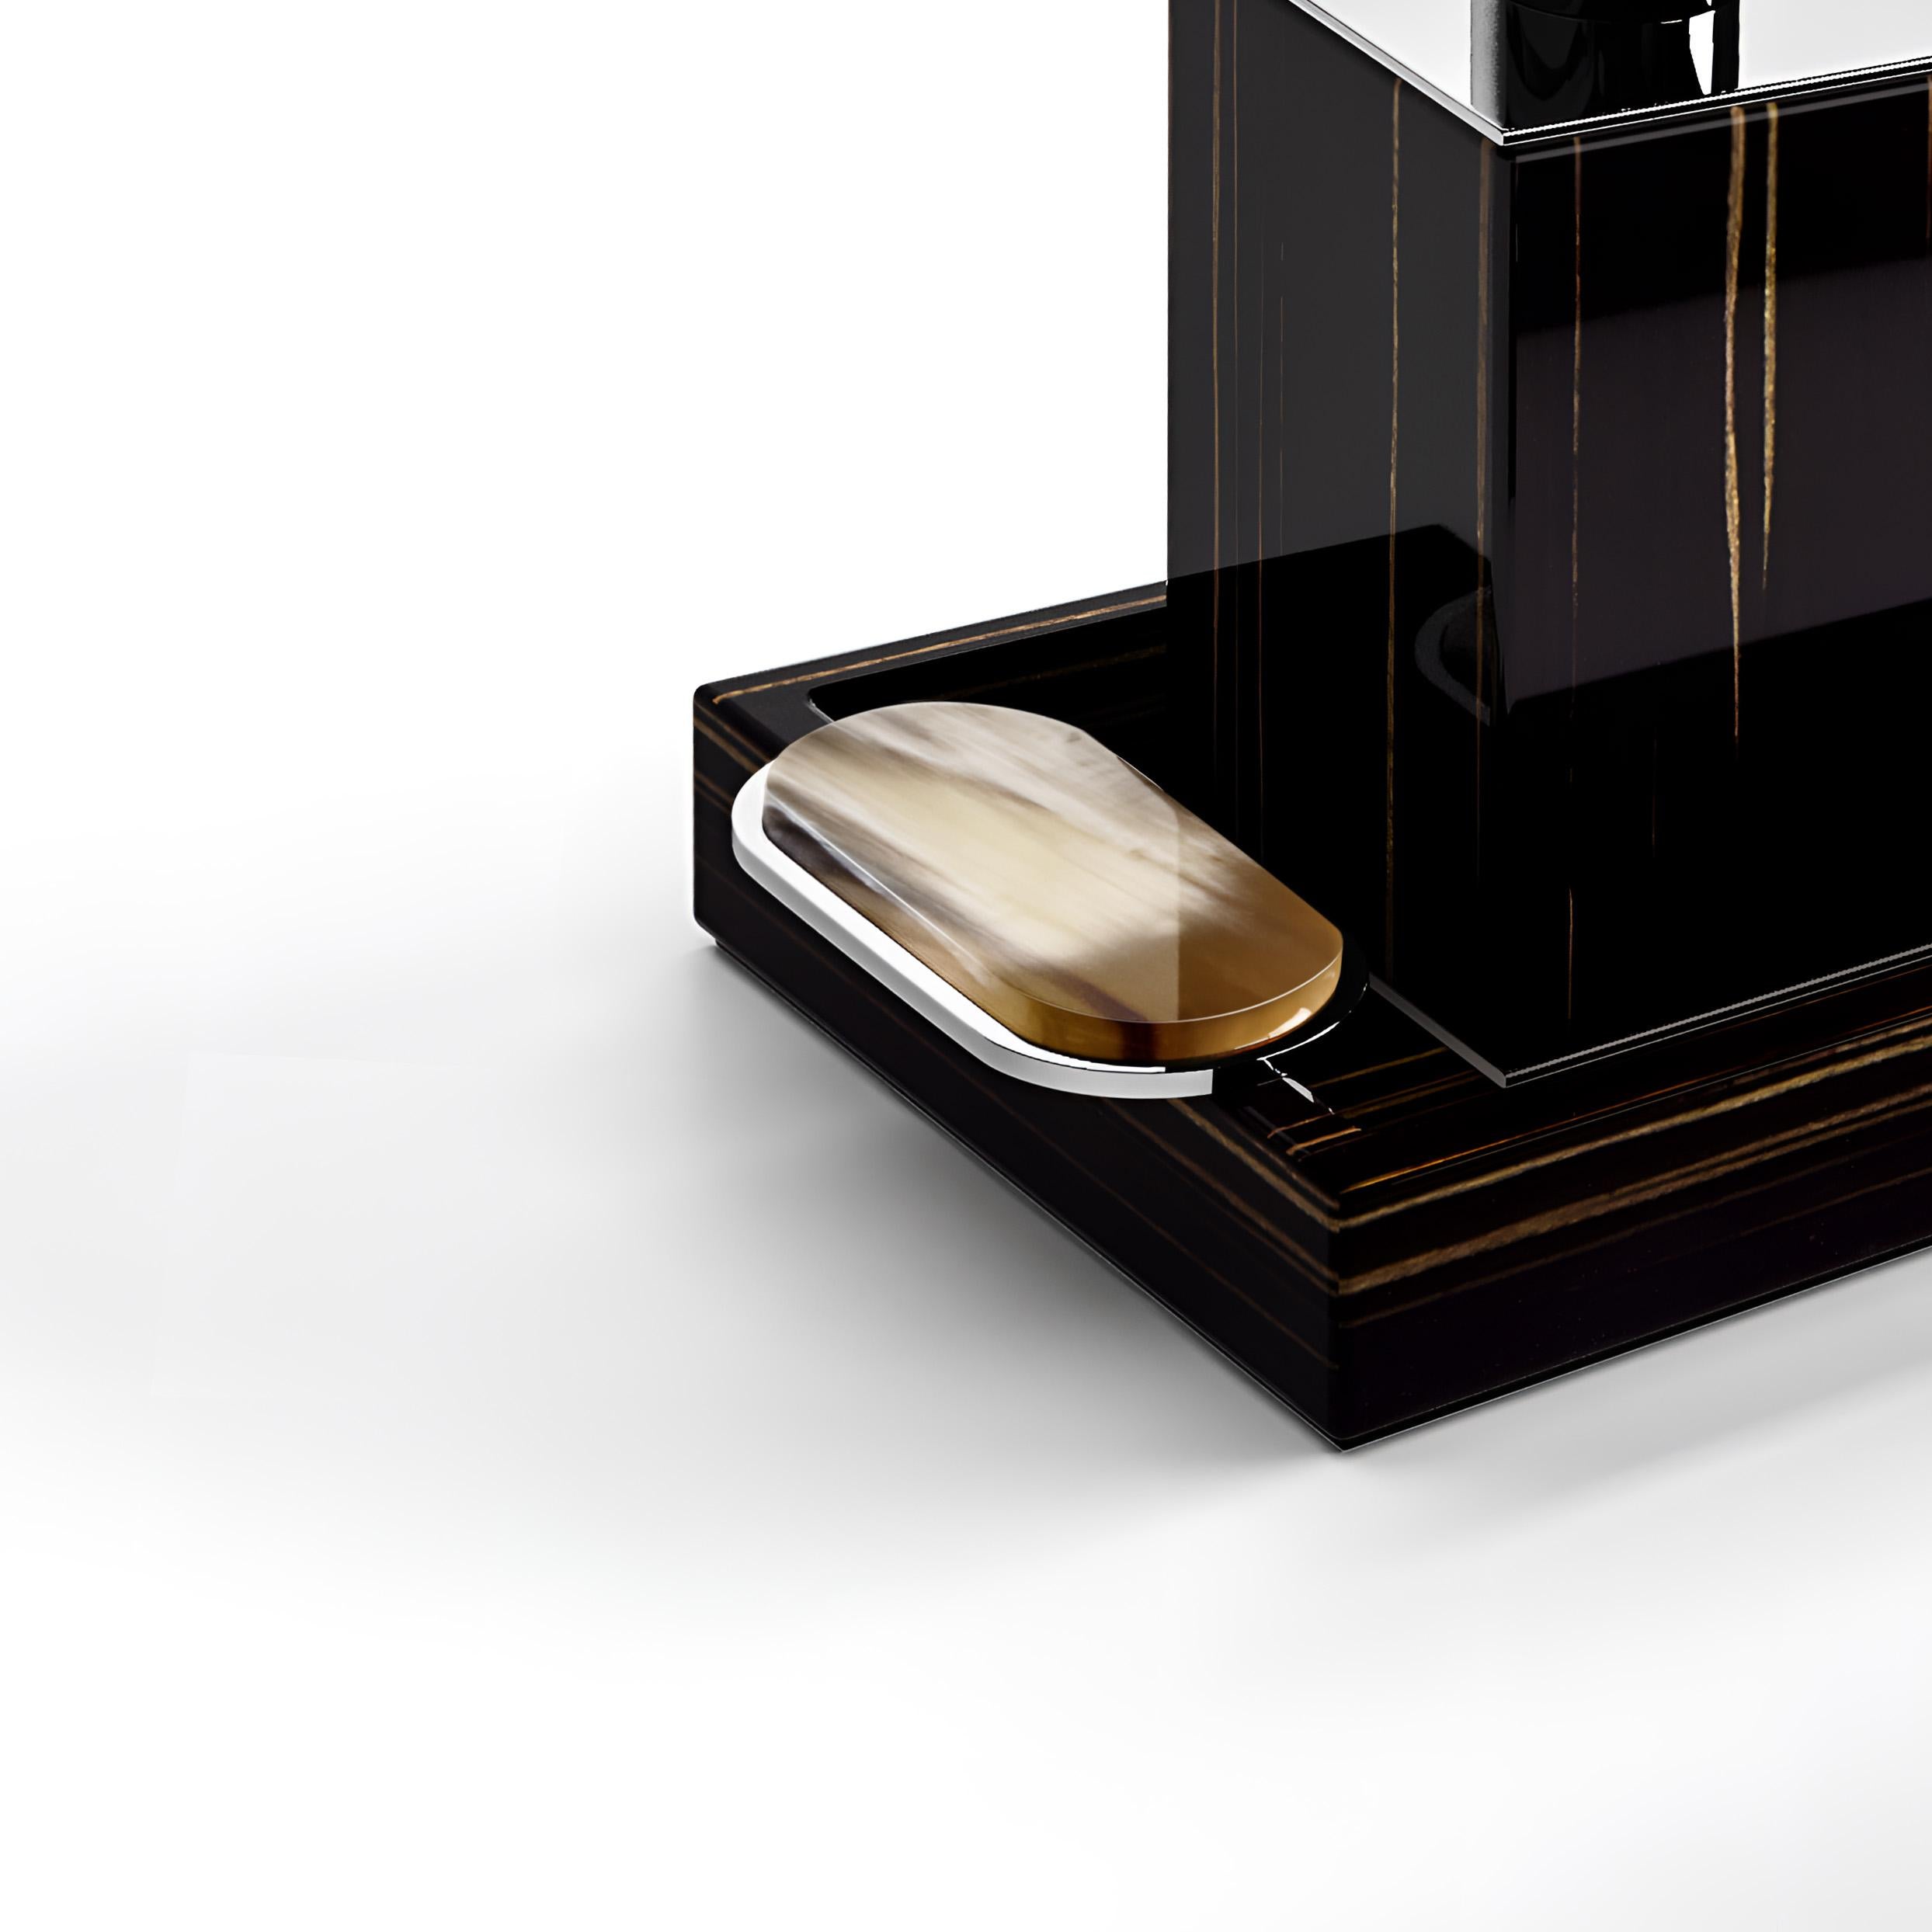 Die Badewannengarnitur Argentella verbindet modernes Flair mit zeitlosen Materialien und verleiht jedem Badezimmer Raffinesse. Das aus glänzendem Ebenholz und verchromtem Messing gefertigte Set besteht aus einem Seifenspender und einem